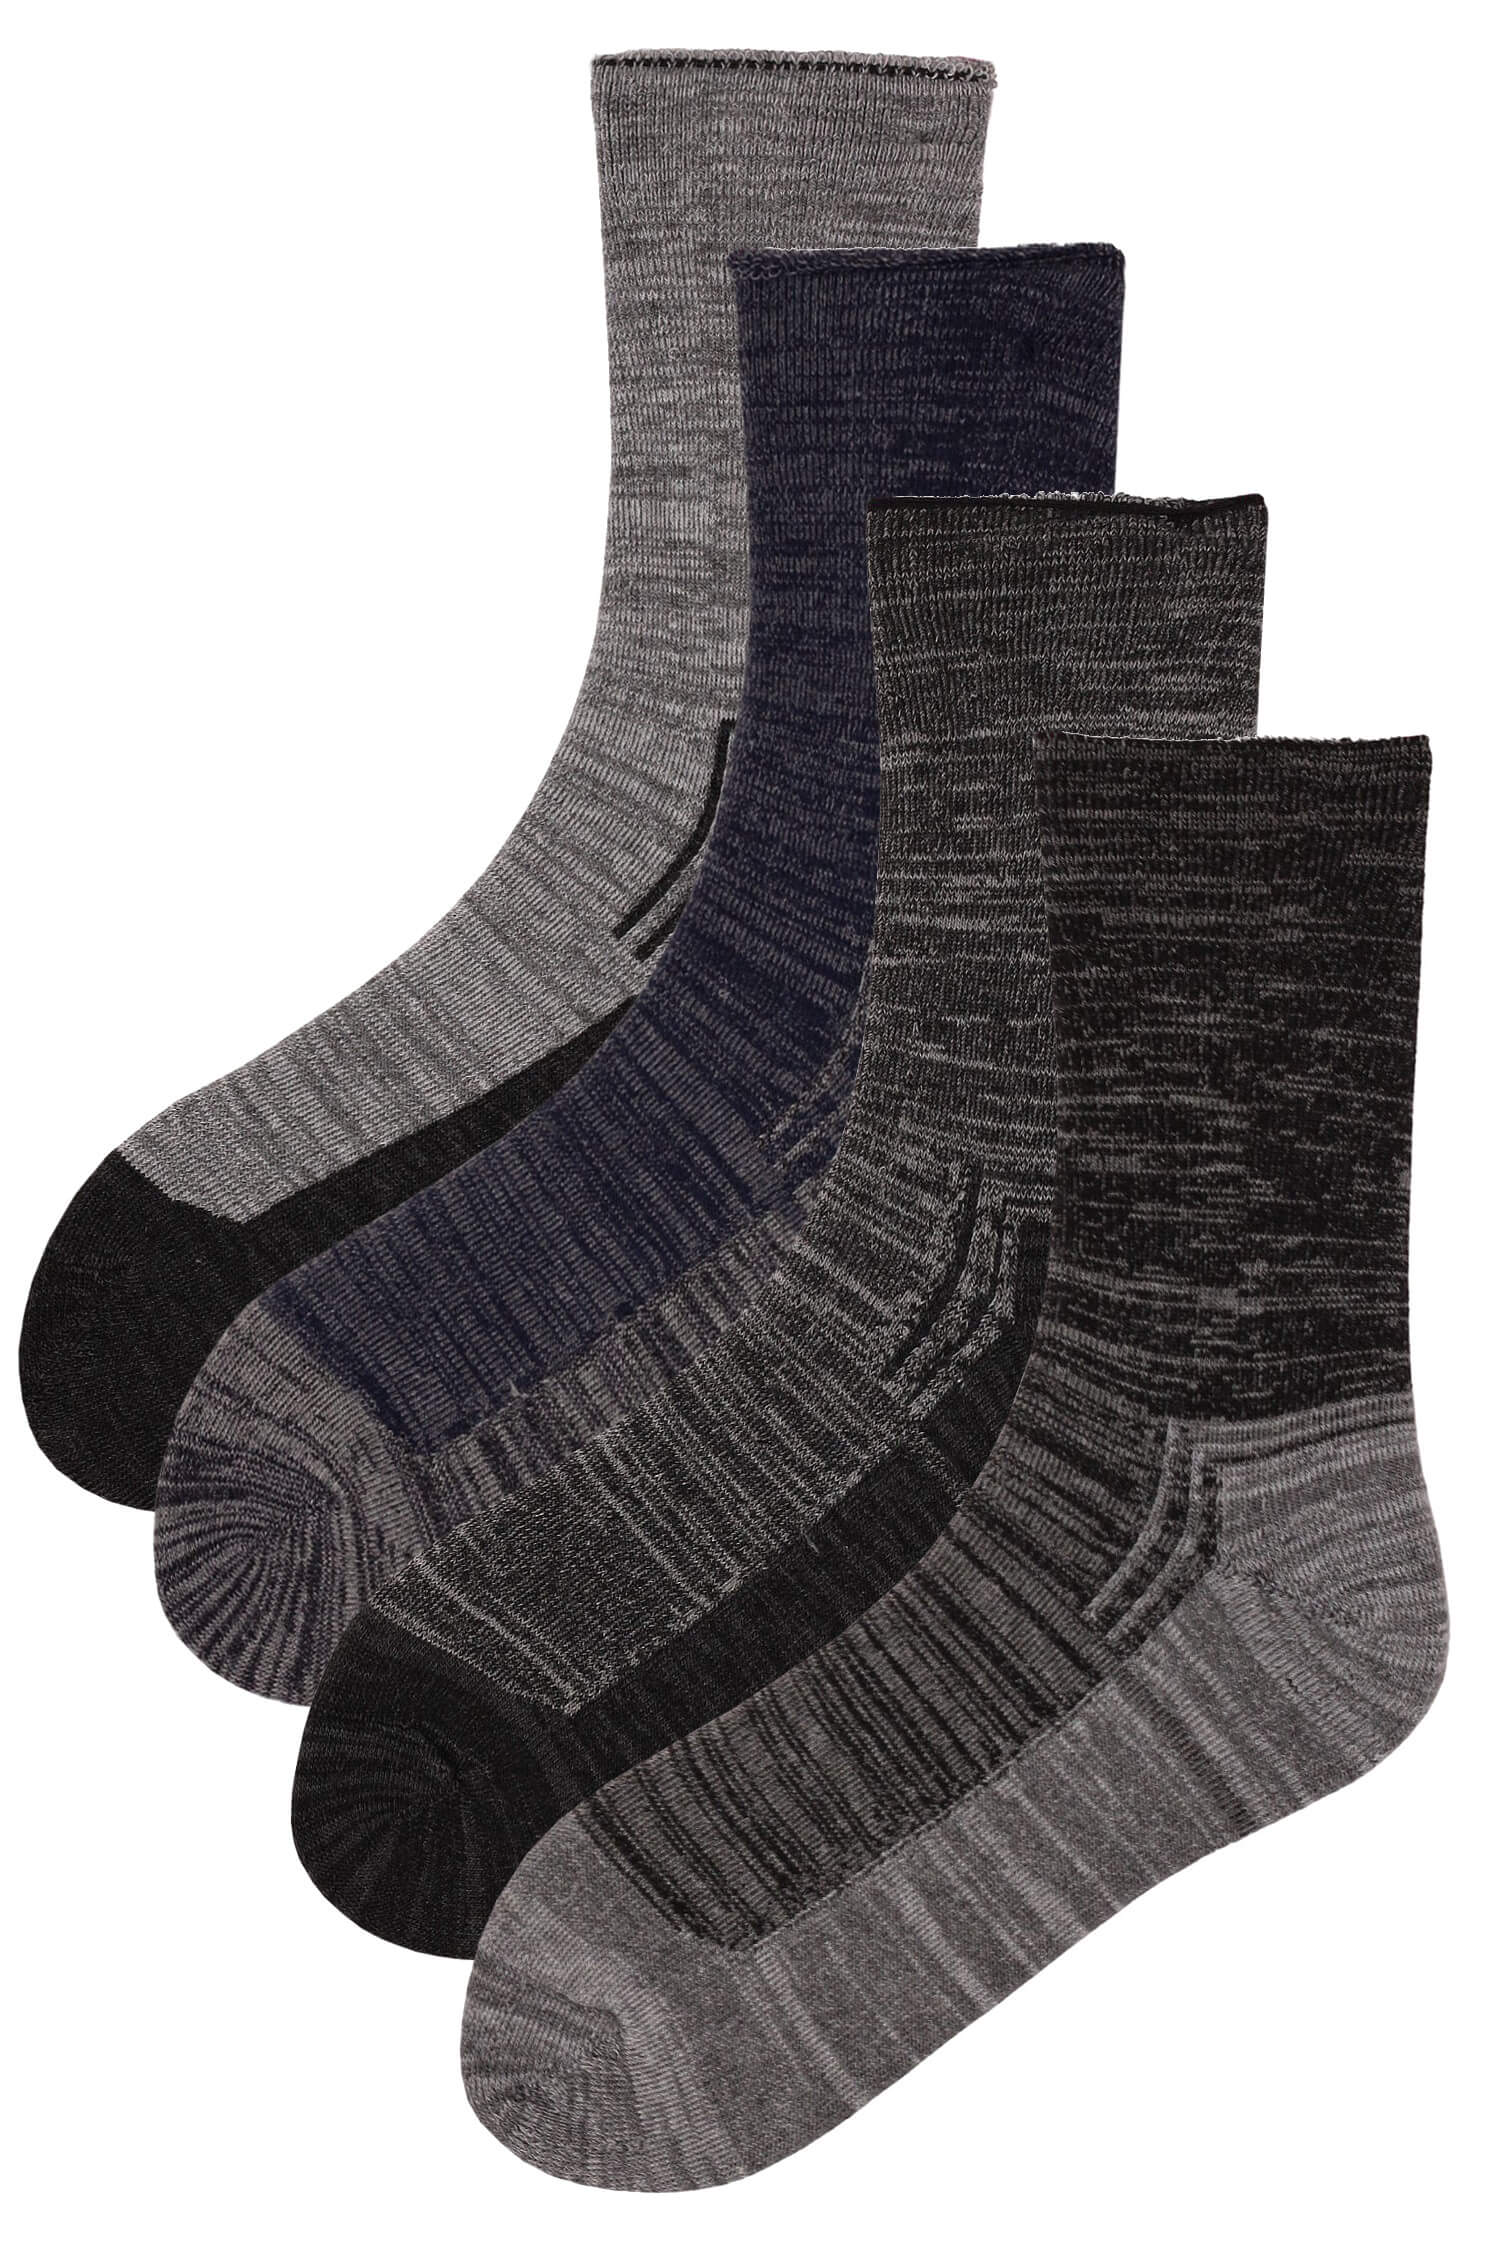 Pánské ponožky thermo bavlna SSM74 - 2 páry 43-47 vícebarevná